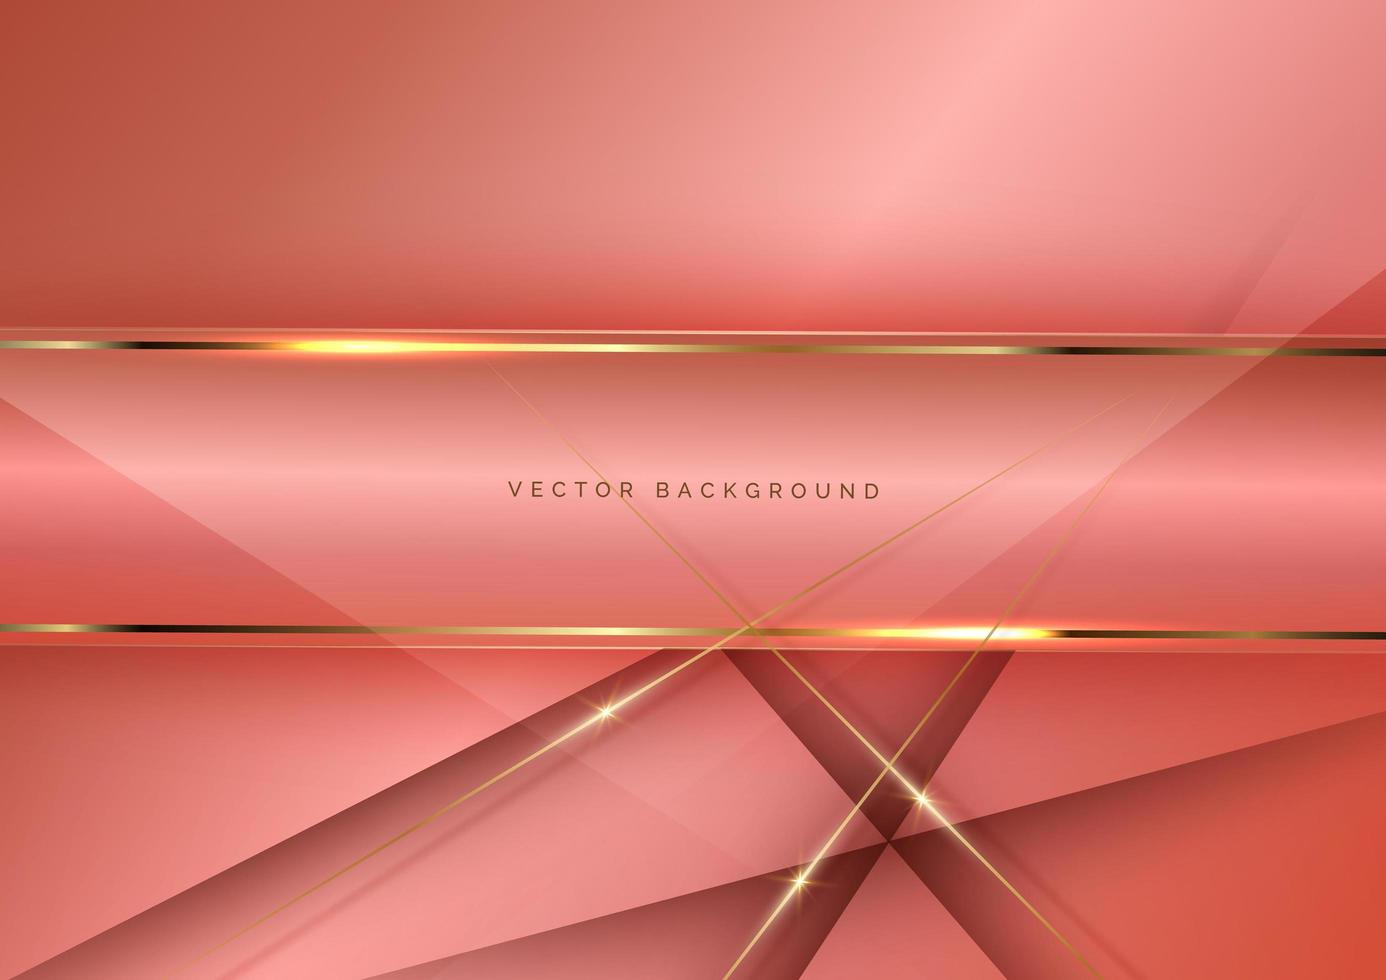 fundo de camada de sobreposição diagonal geométrica elegante rosa luxo abstrato com linhas douradas. vetor